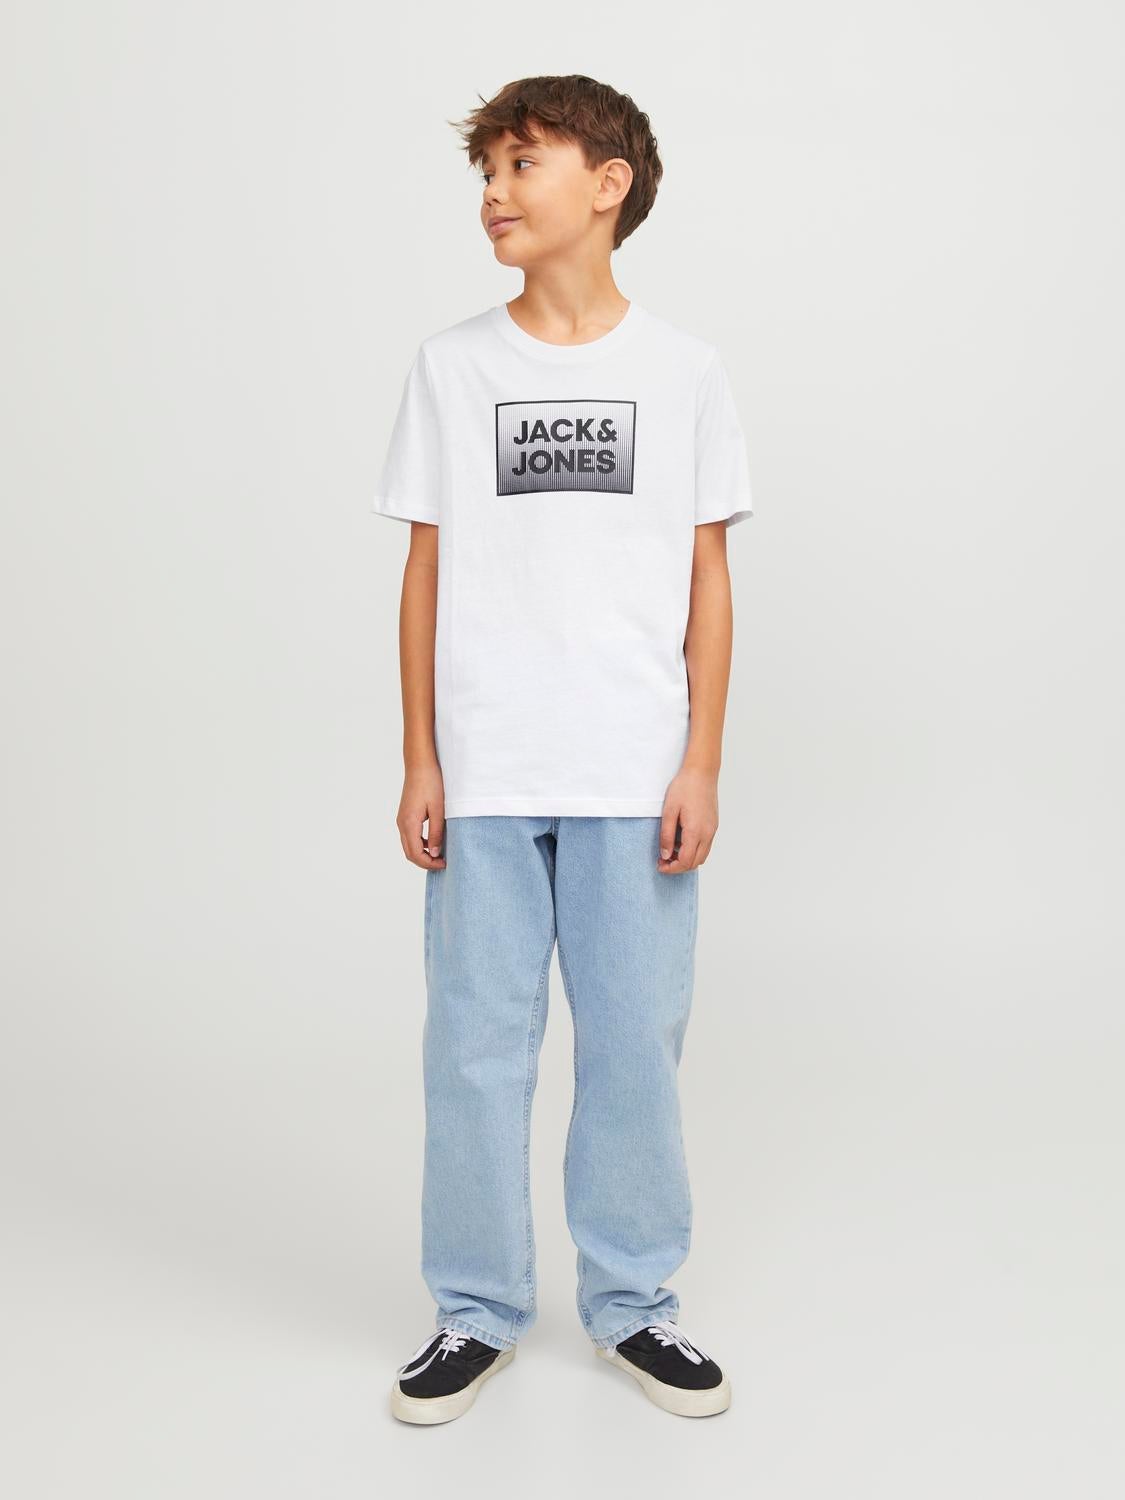 Trükitud T-shirt For boys